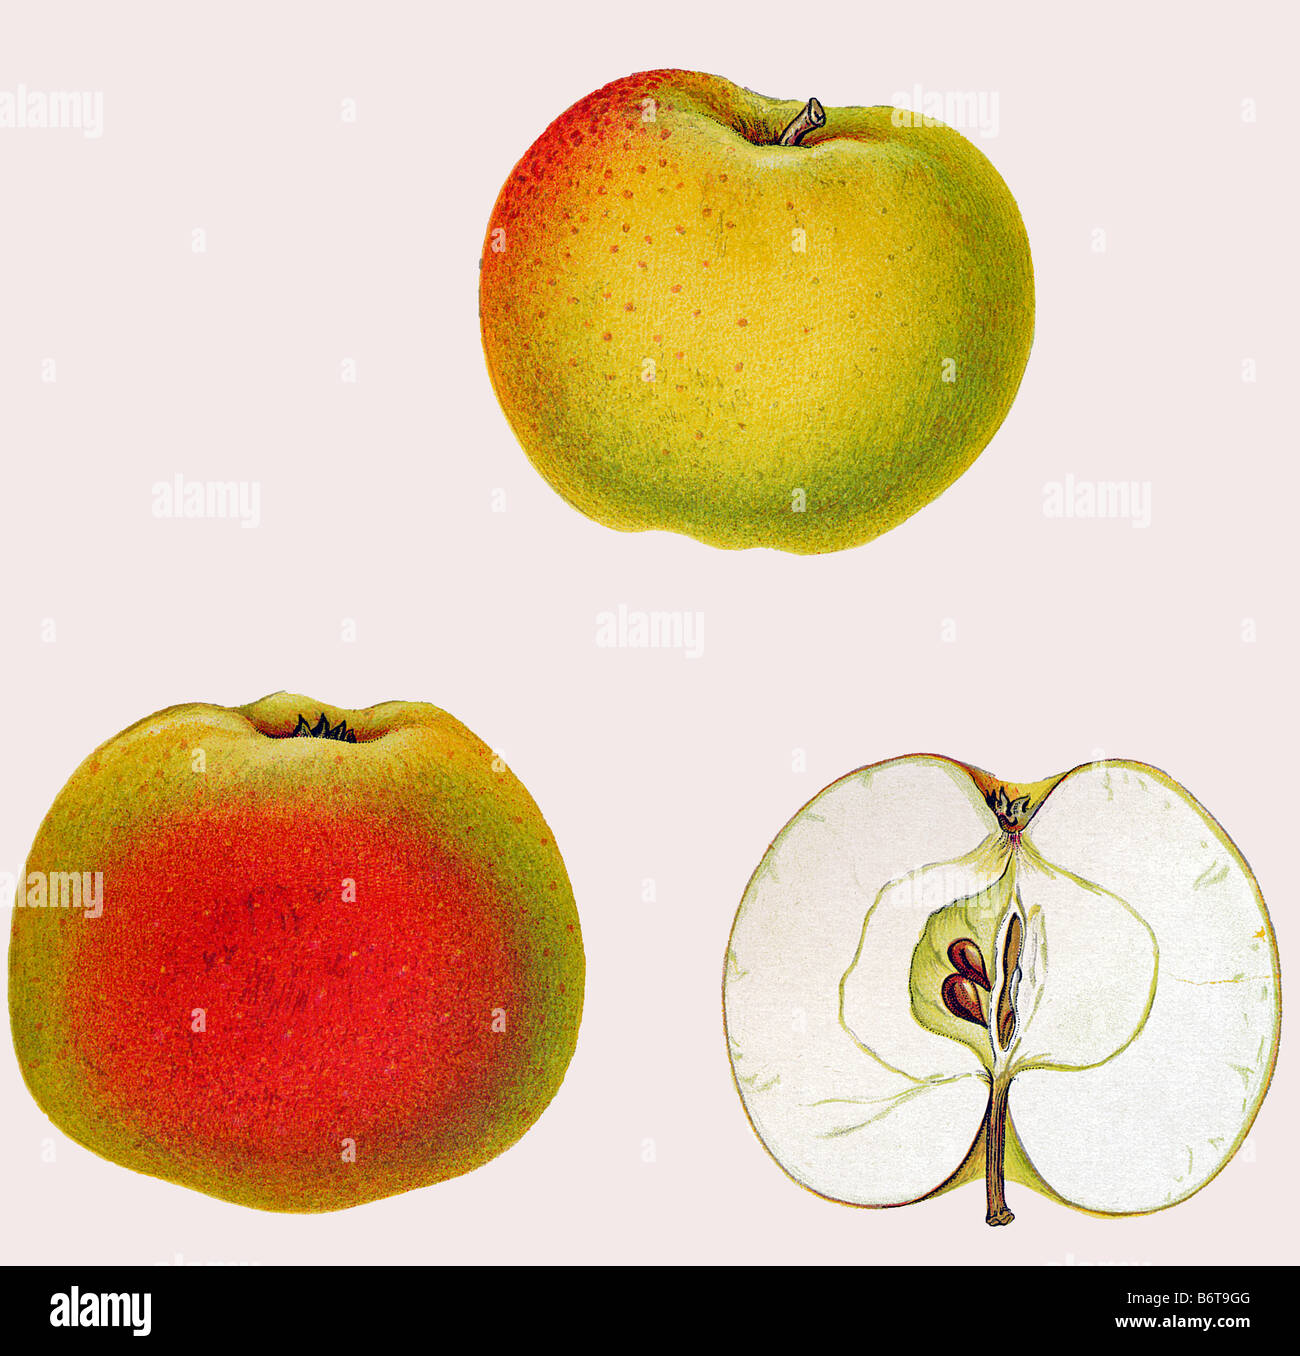 Illustration of the apple 'Stenkyrkeäpple' Stock Photo